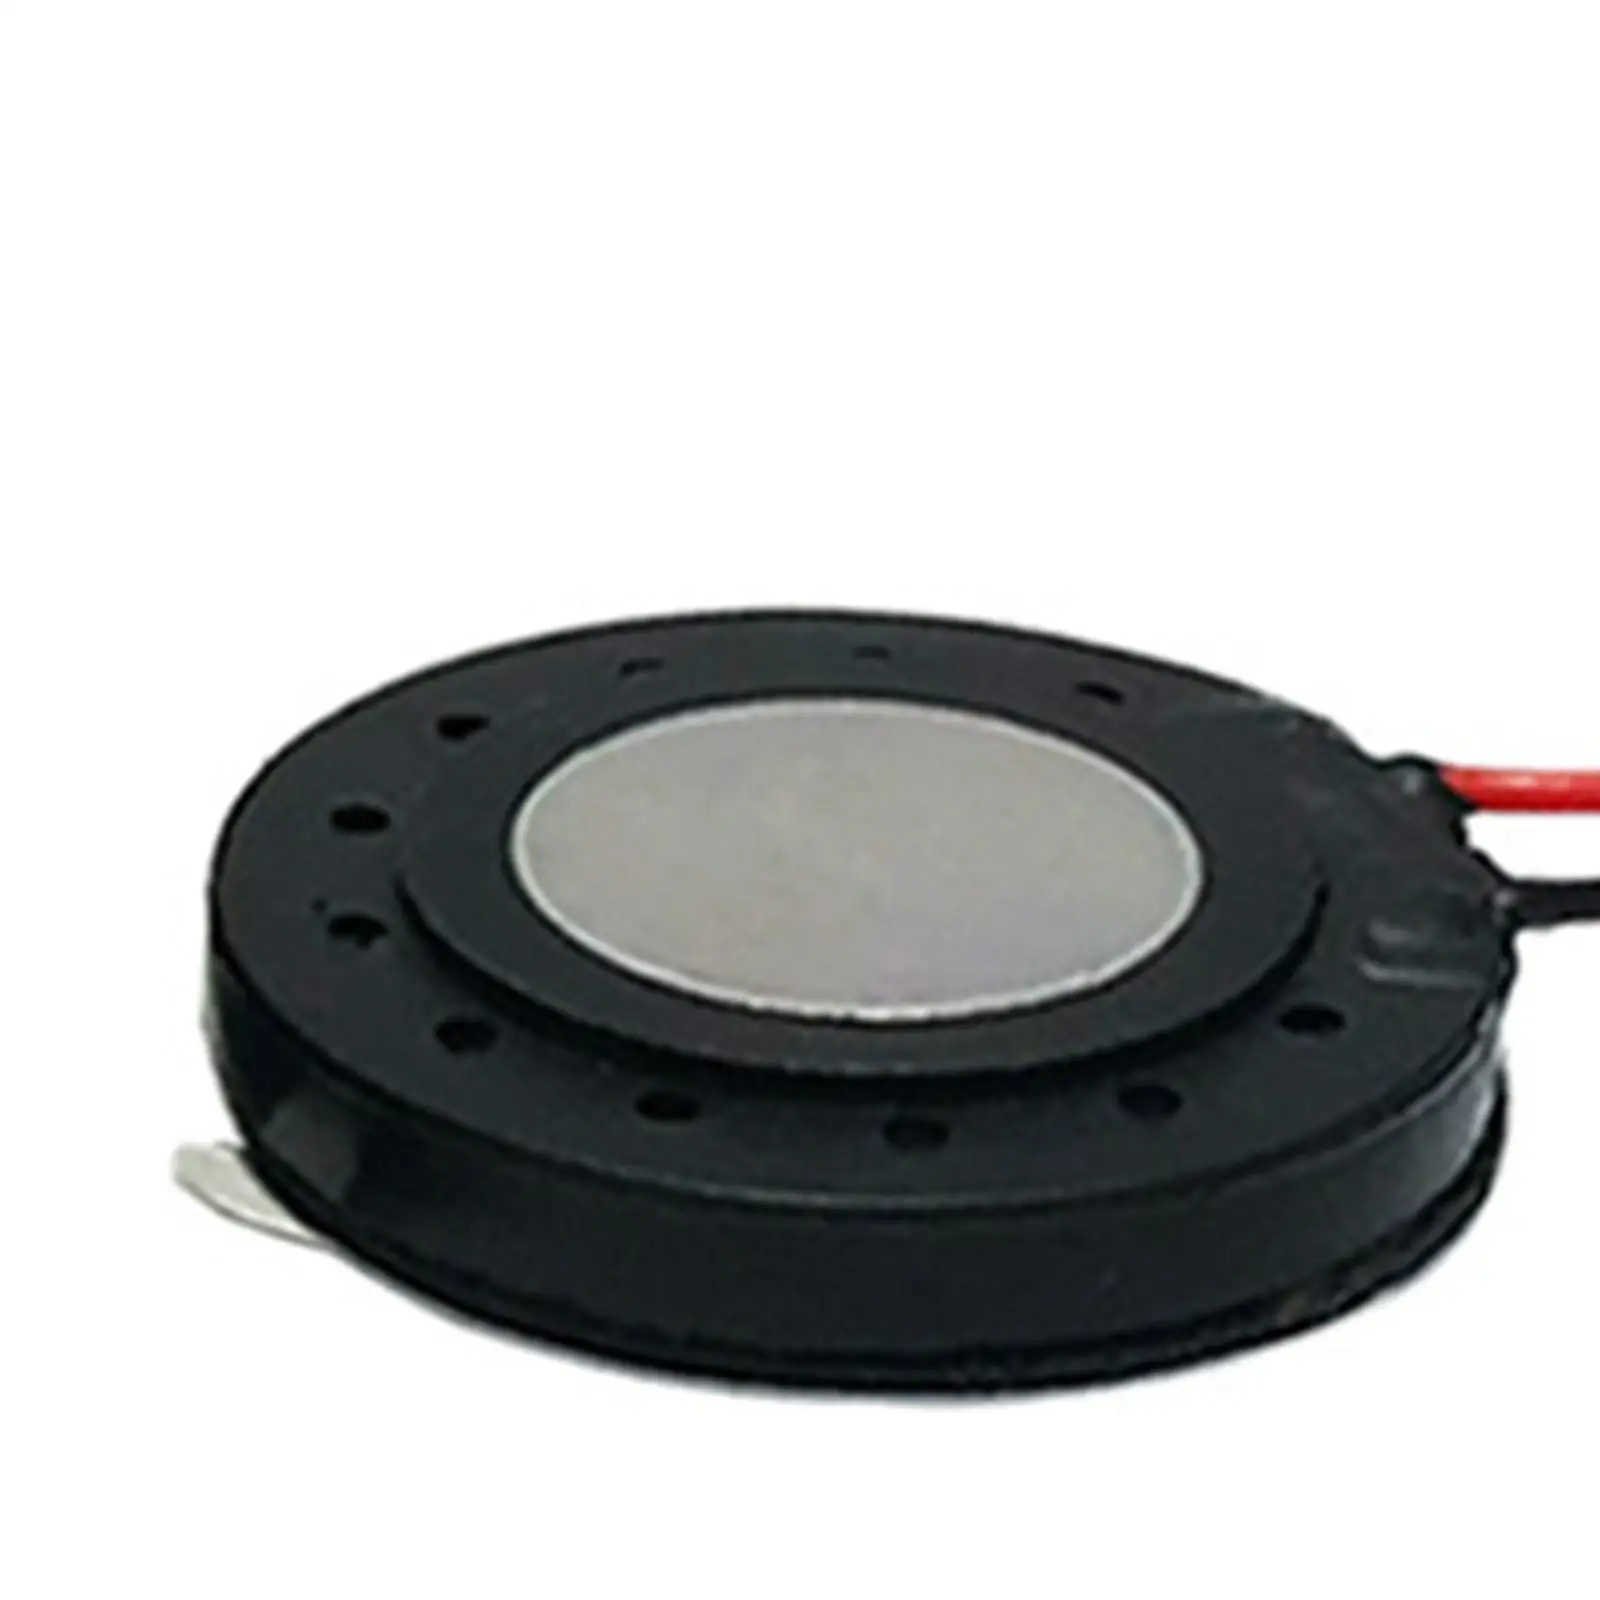 2Pcs 1W 8 Ohm Internal Magnet Speaker Mini Horn Small Speaker for Fingerprint Lock Speaker Audio Parts Round Metal Shell Slim